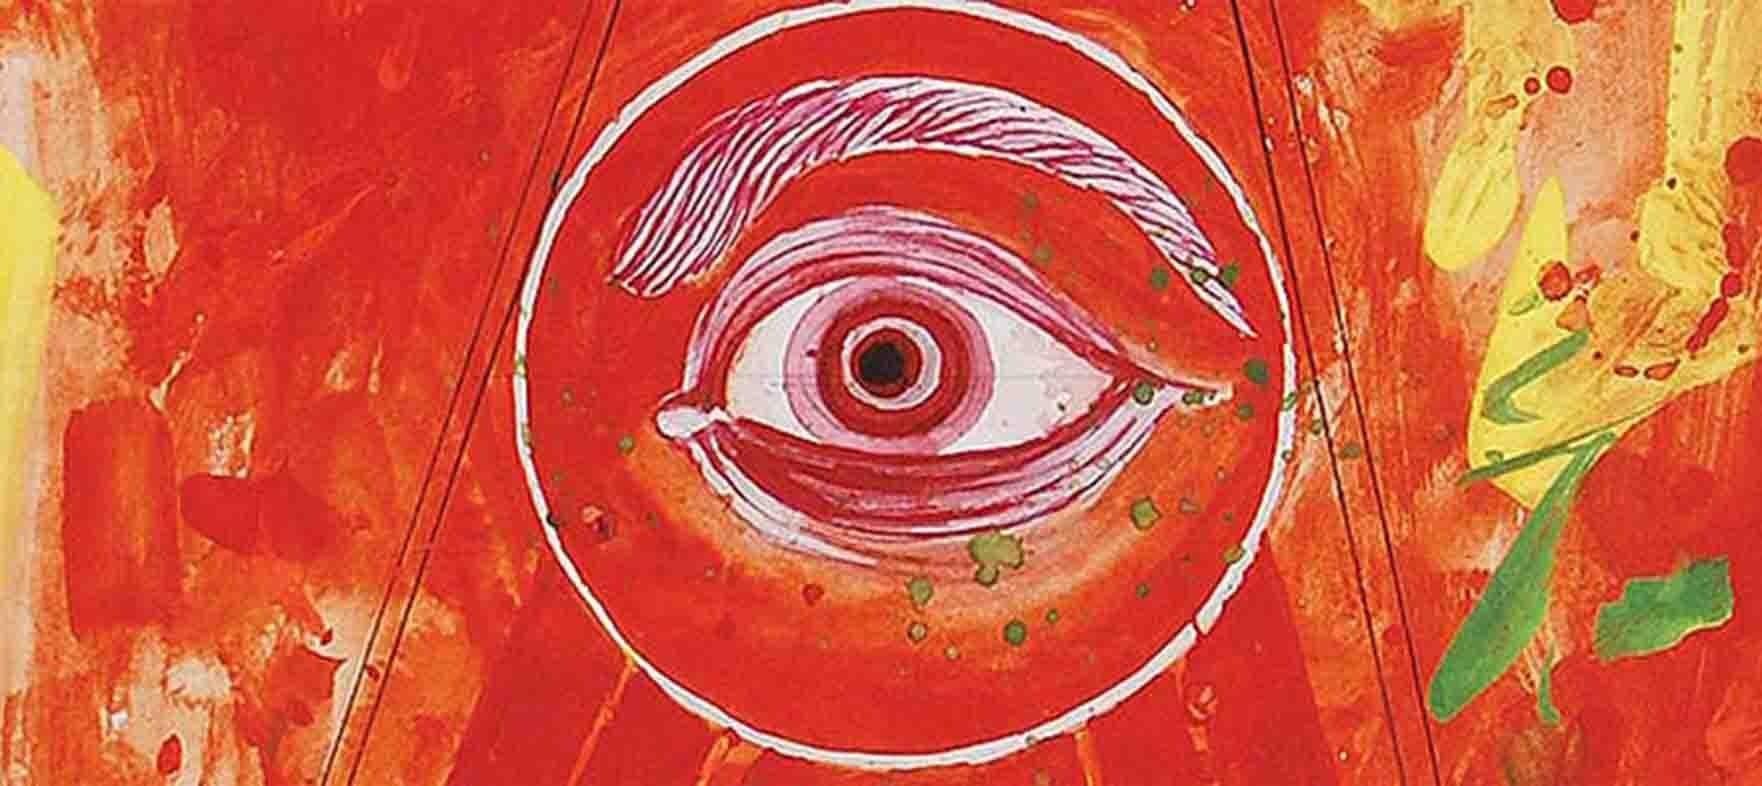 Sunil Das - Durga 97 - 10 x 8 pouces (taille non encadrée)
Durga, le troisième oeil. 
Médias mixtes sur carton 
Expédition comprise, sous forme prête à être accrochée.

Dans la mythologie indienne, la déesse Durga avait un troisième œil qui lui